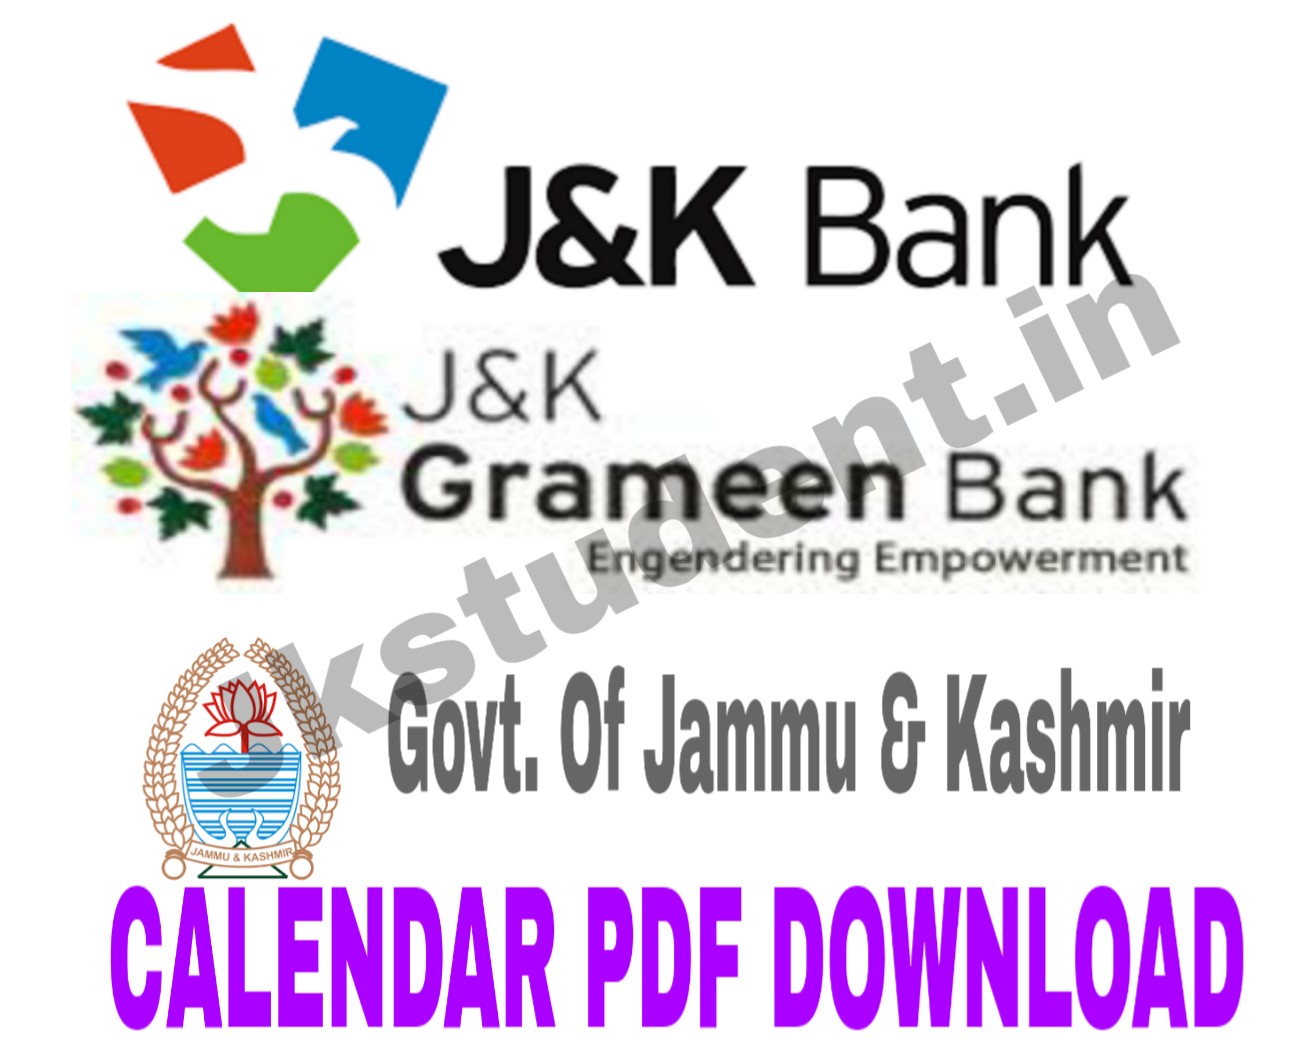 Download Jkbank Jk Grameen Bank And Govt Calendar Pdf